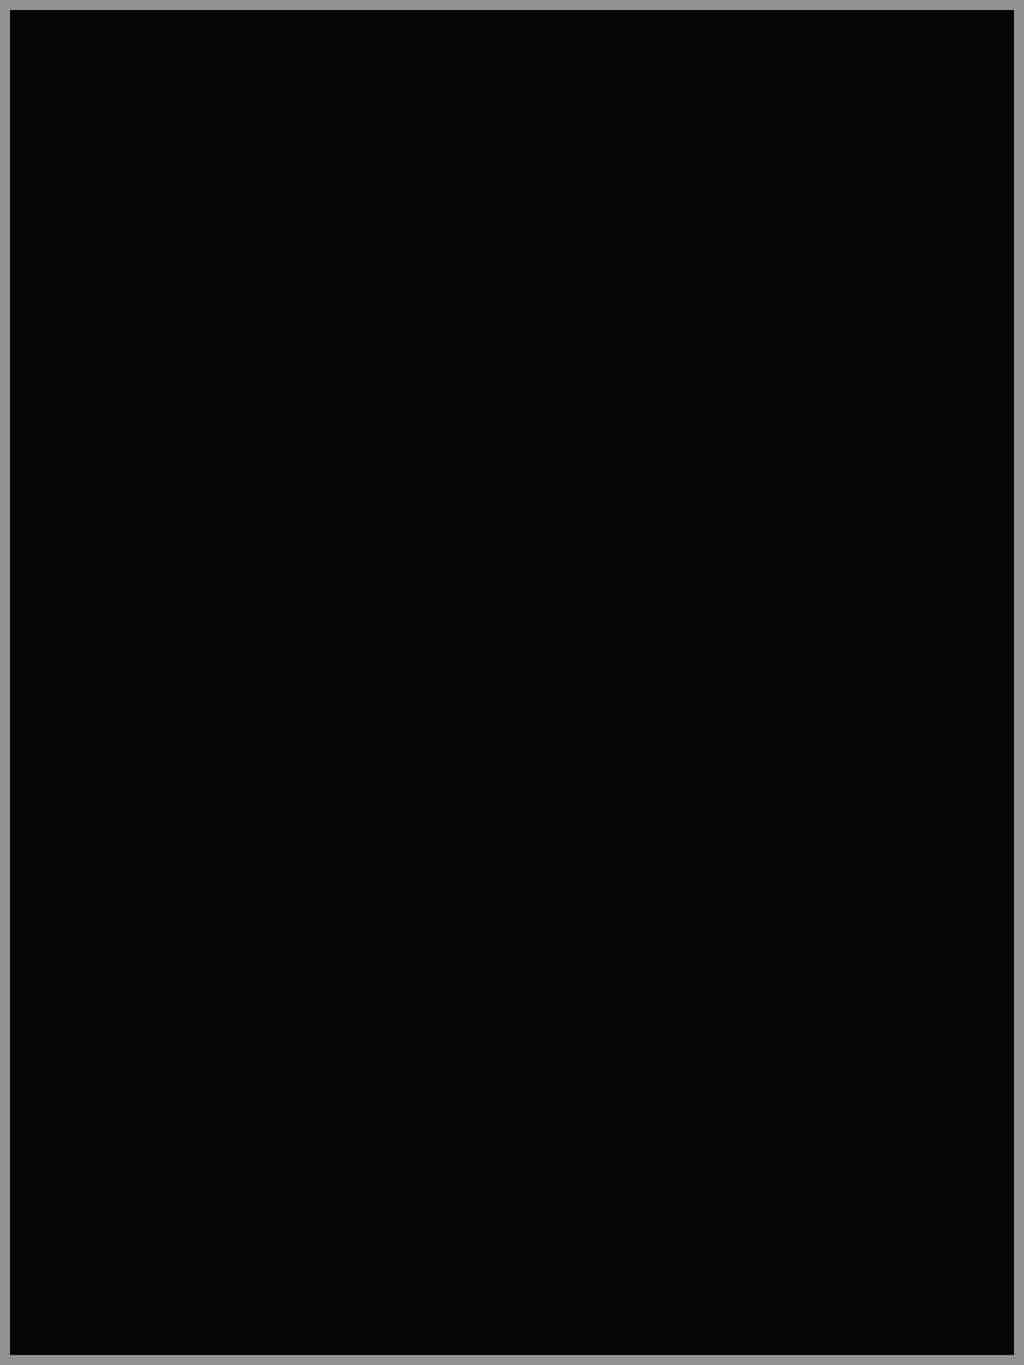 49+] Solid Black Wallpaper - WallpaperSafari